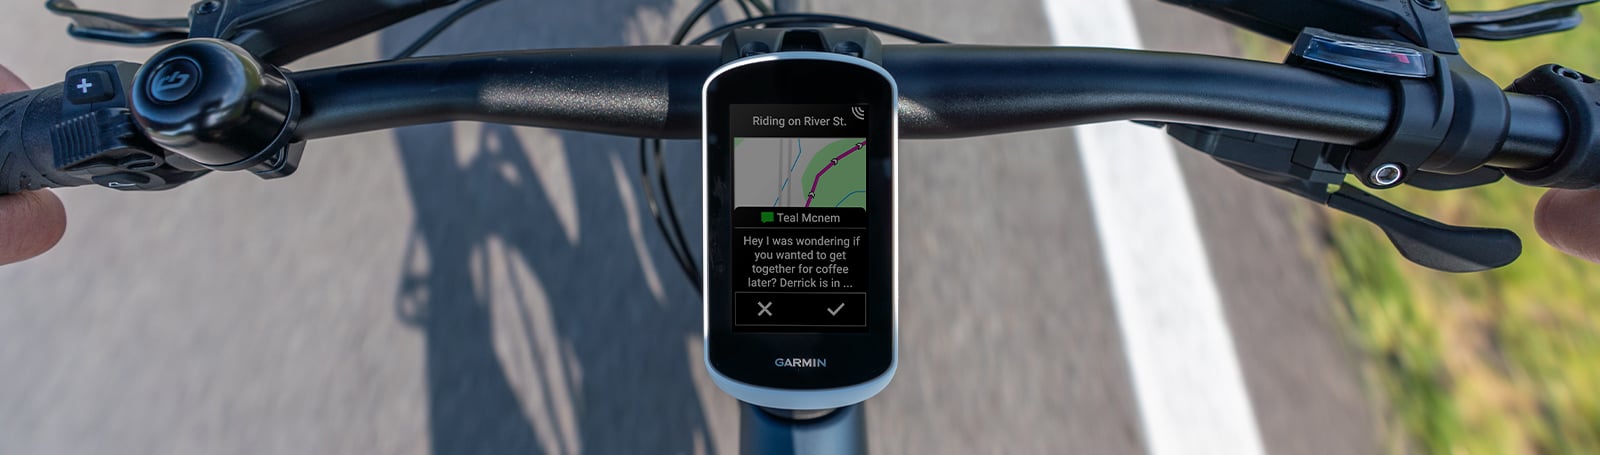 Garmin Pack Edge Explore 2 GPS Compteur Vélo et Support Alimenté - BIKE24